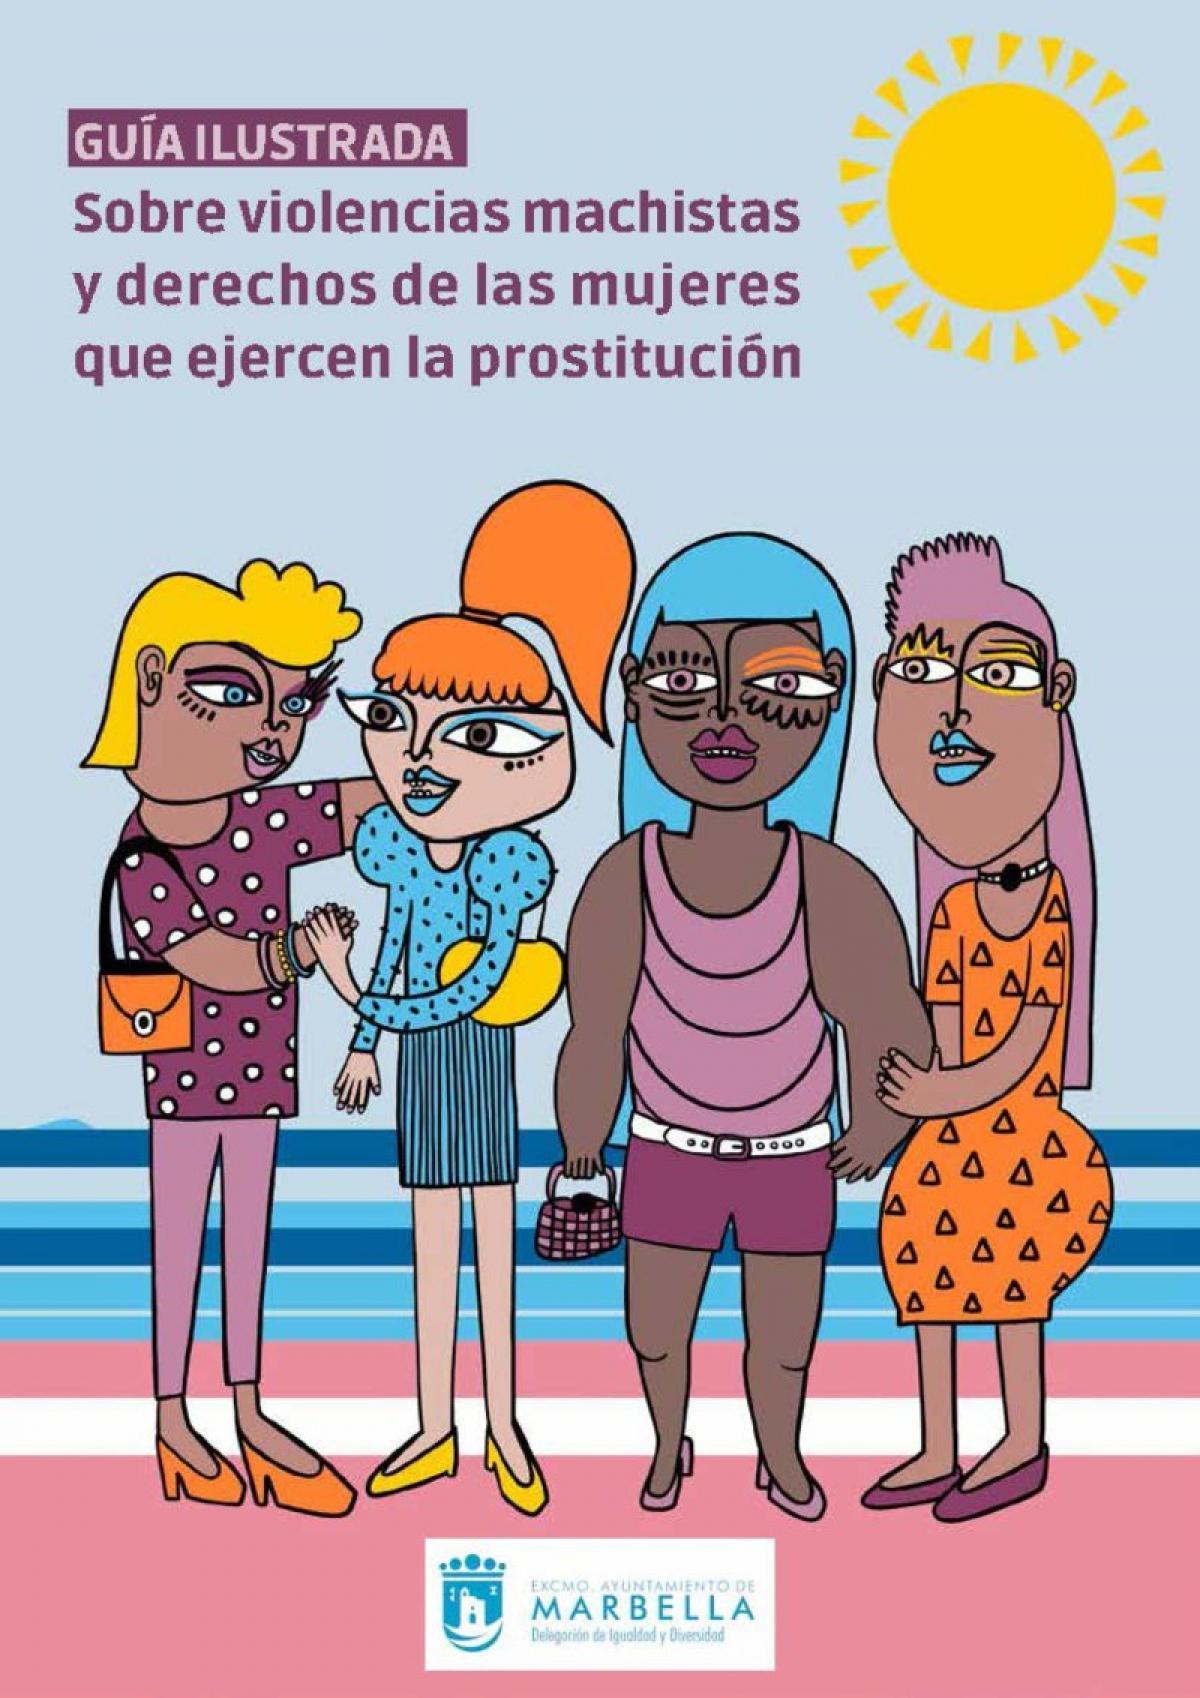 Portada de la guía sobre prostitución editada por el Ayuntamiento de Marbella